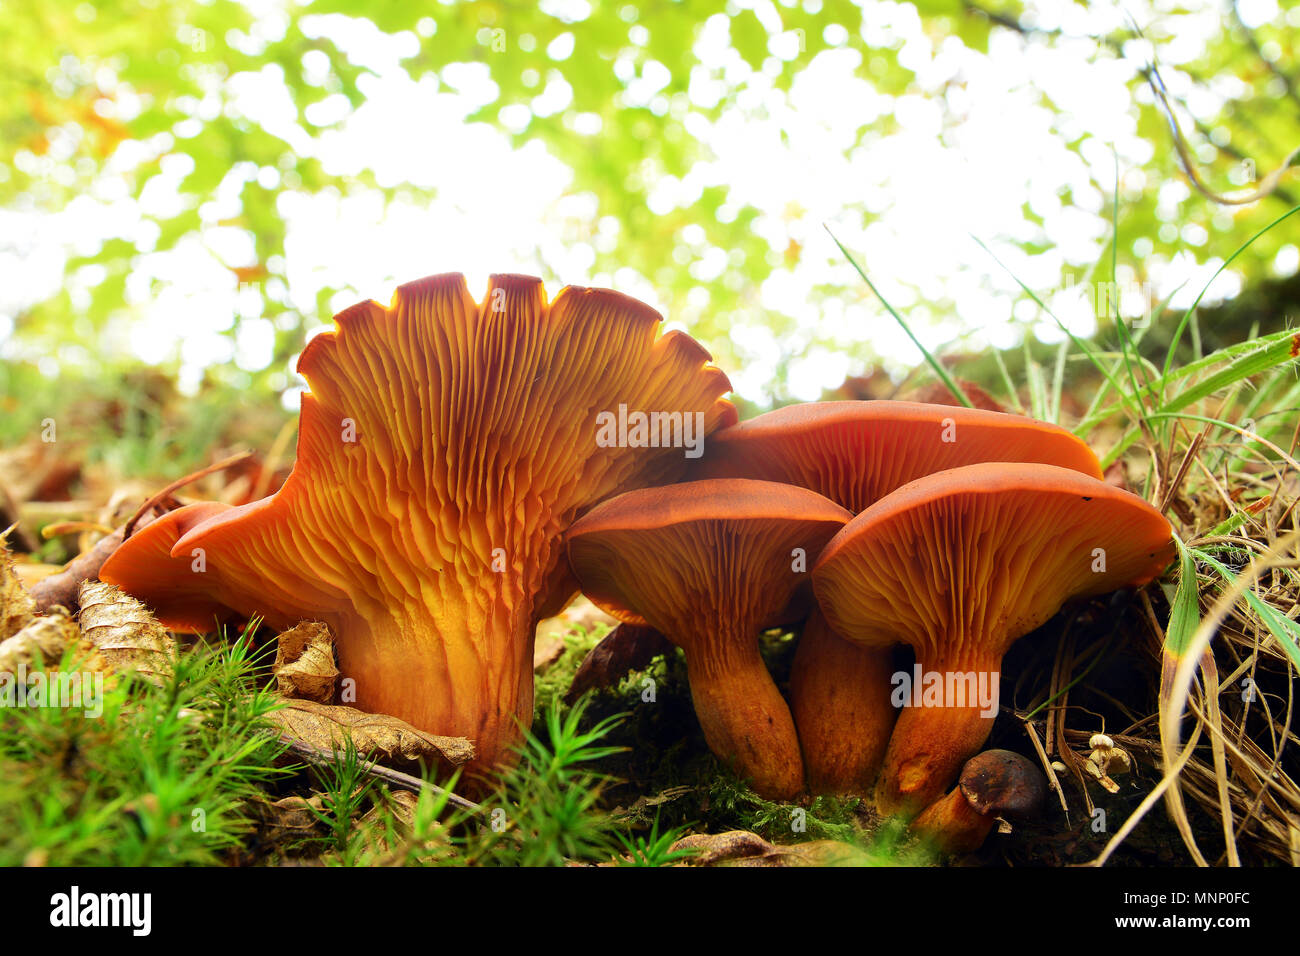 Omphalotus olearius cluster de champignons, très toxique Banque D'Images